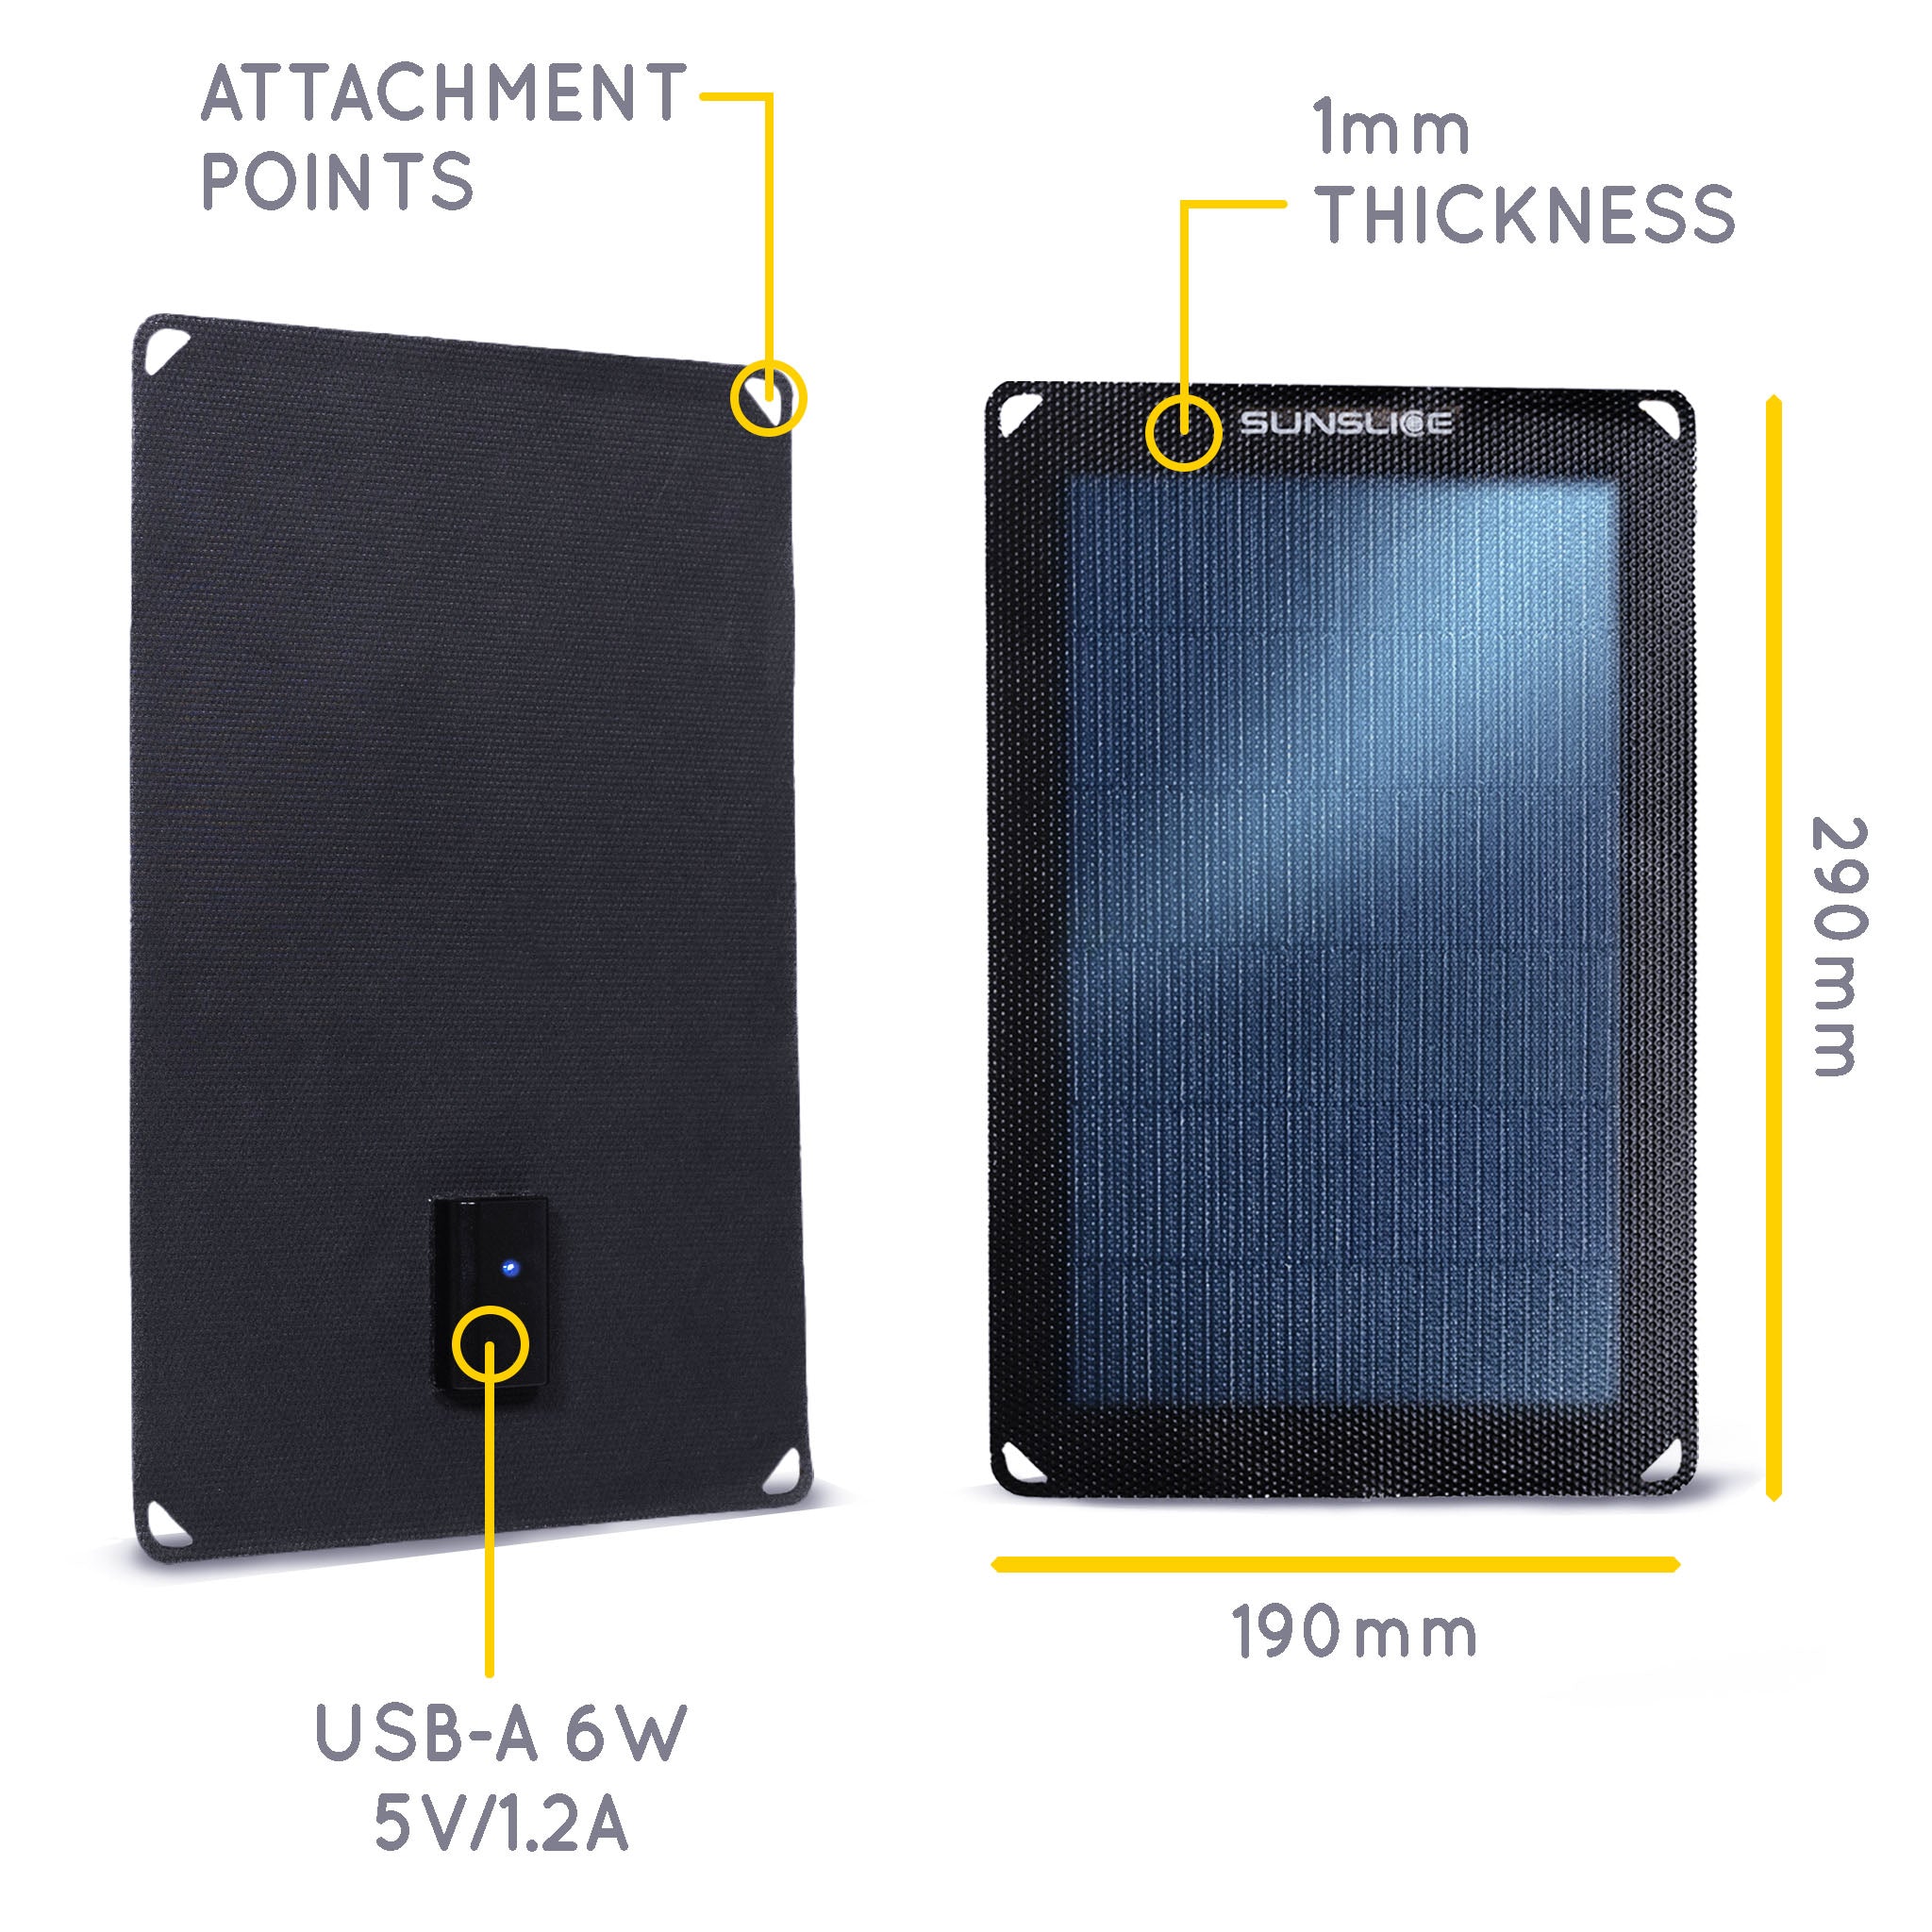 Informationen zum tragbaren Solarpanel : Größe: 290 mm, 190 mm,, Dicke: 1mm. Leistung : USB-A 6w 